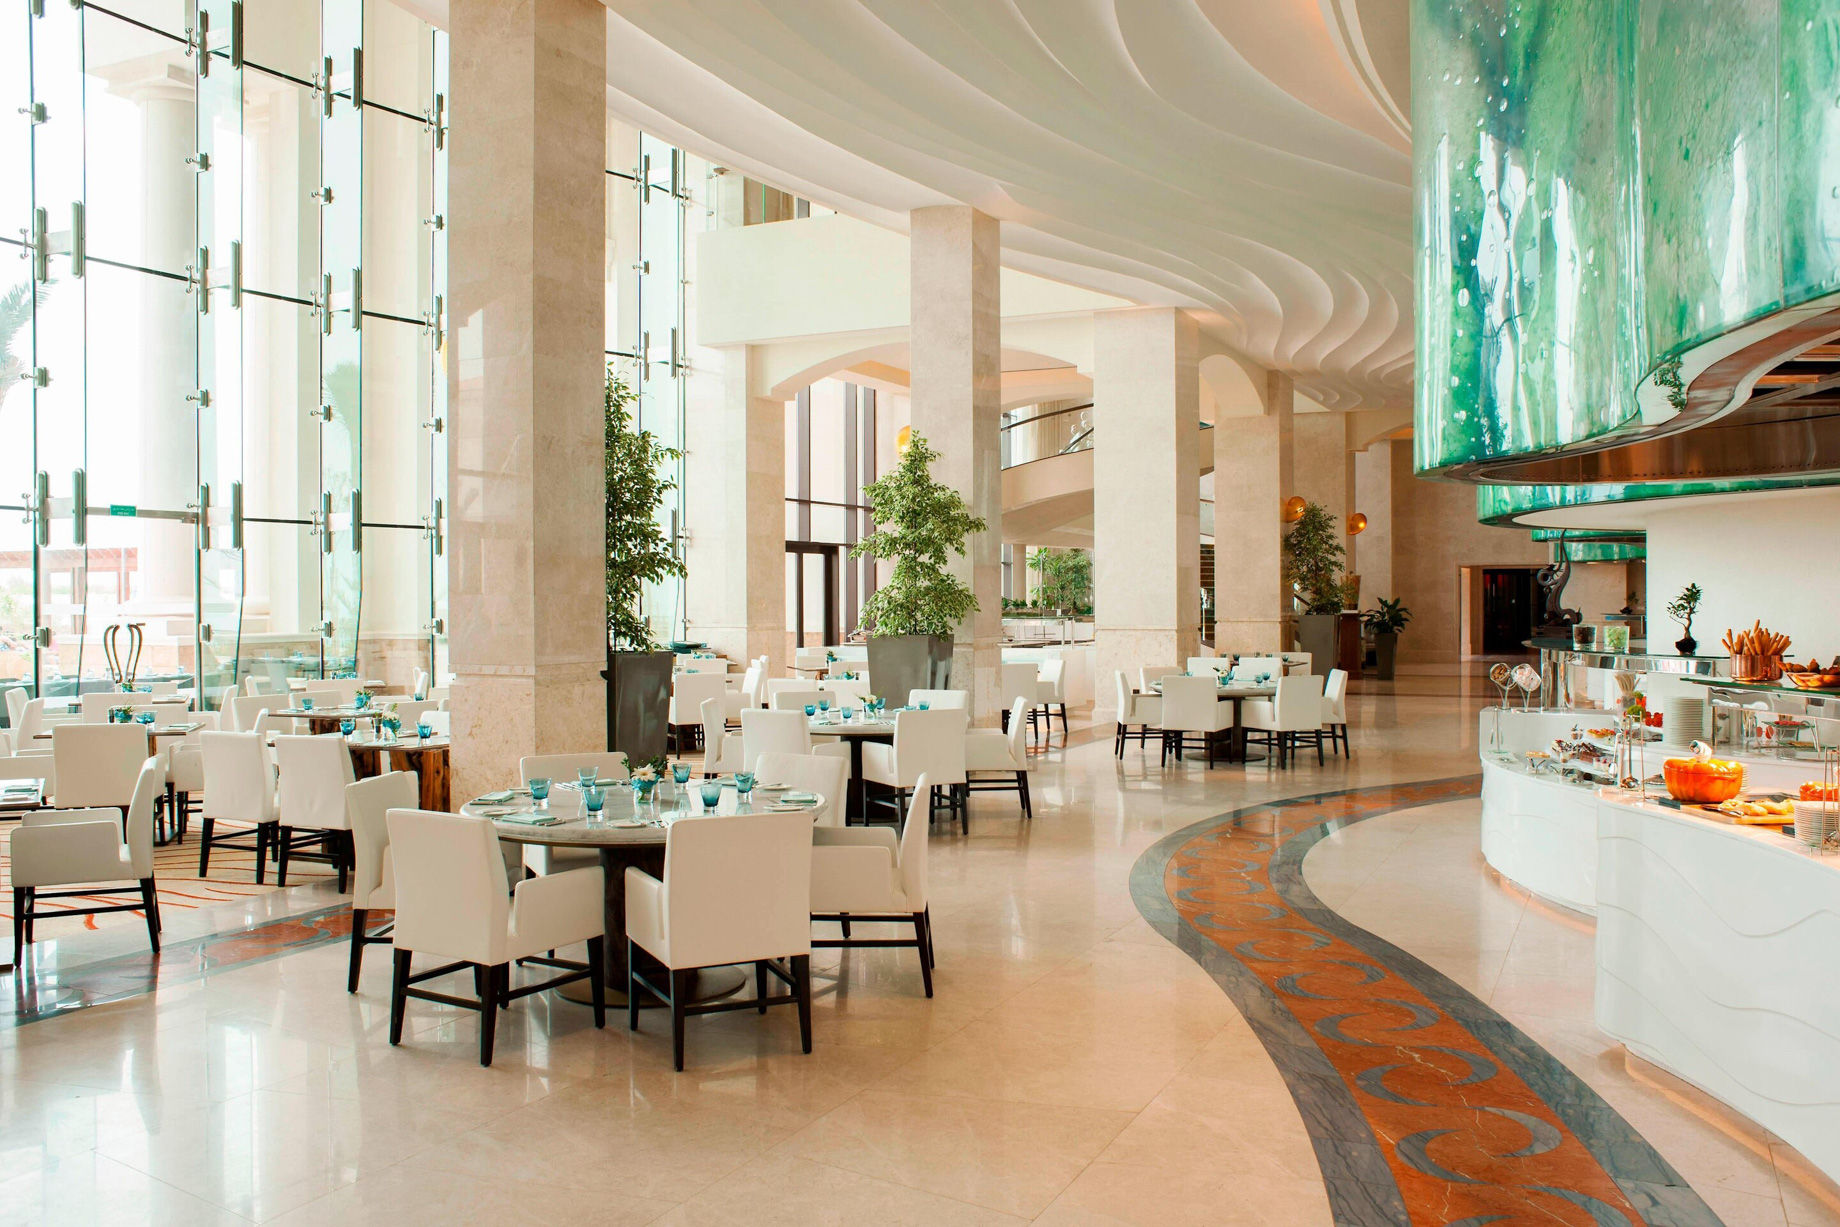 The St. Regis Saadiyat Island Resort – Abu Dhabi, UAE – Olea Restaurant Seating